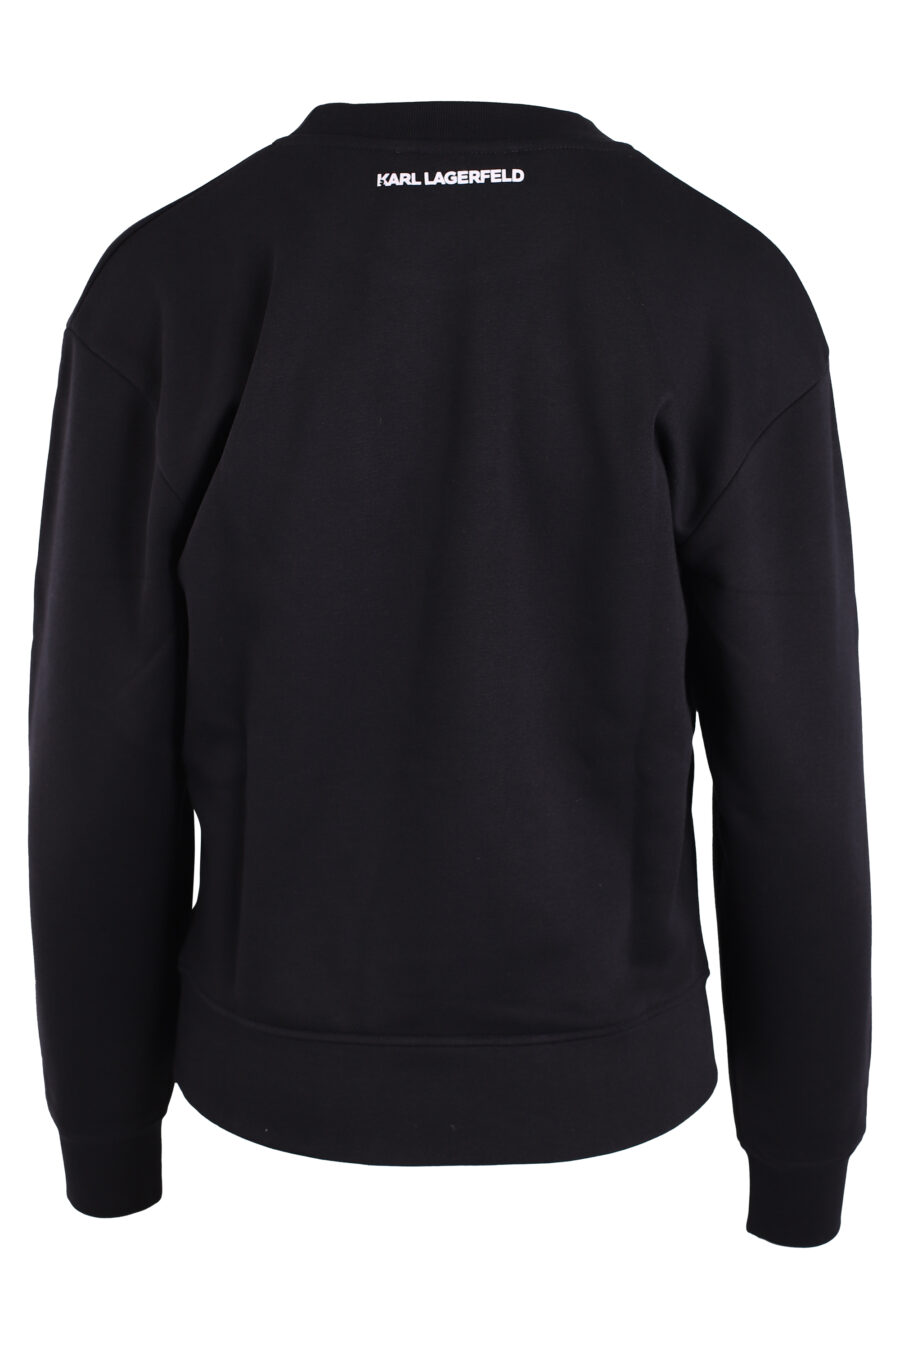 Black sweatshirt with large round logo - IMG 3333